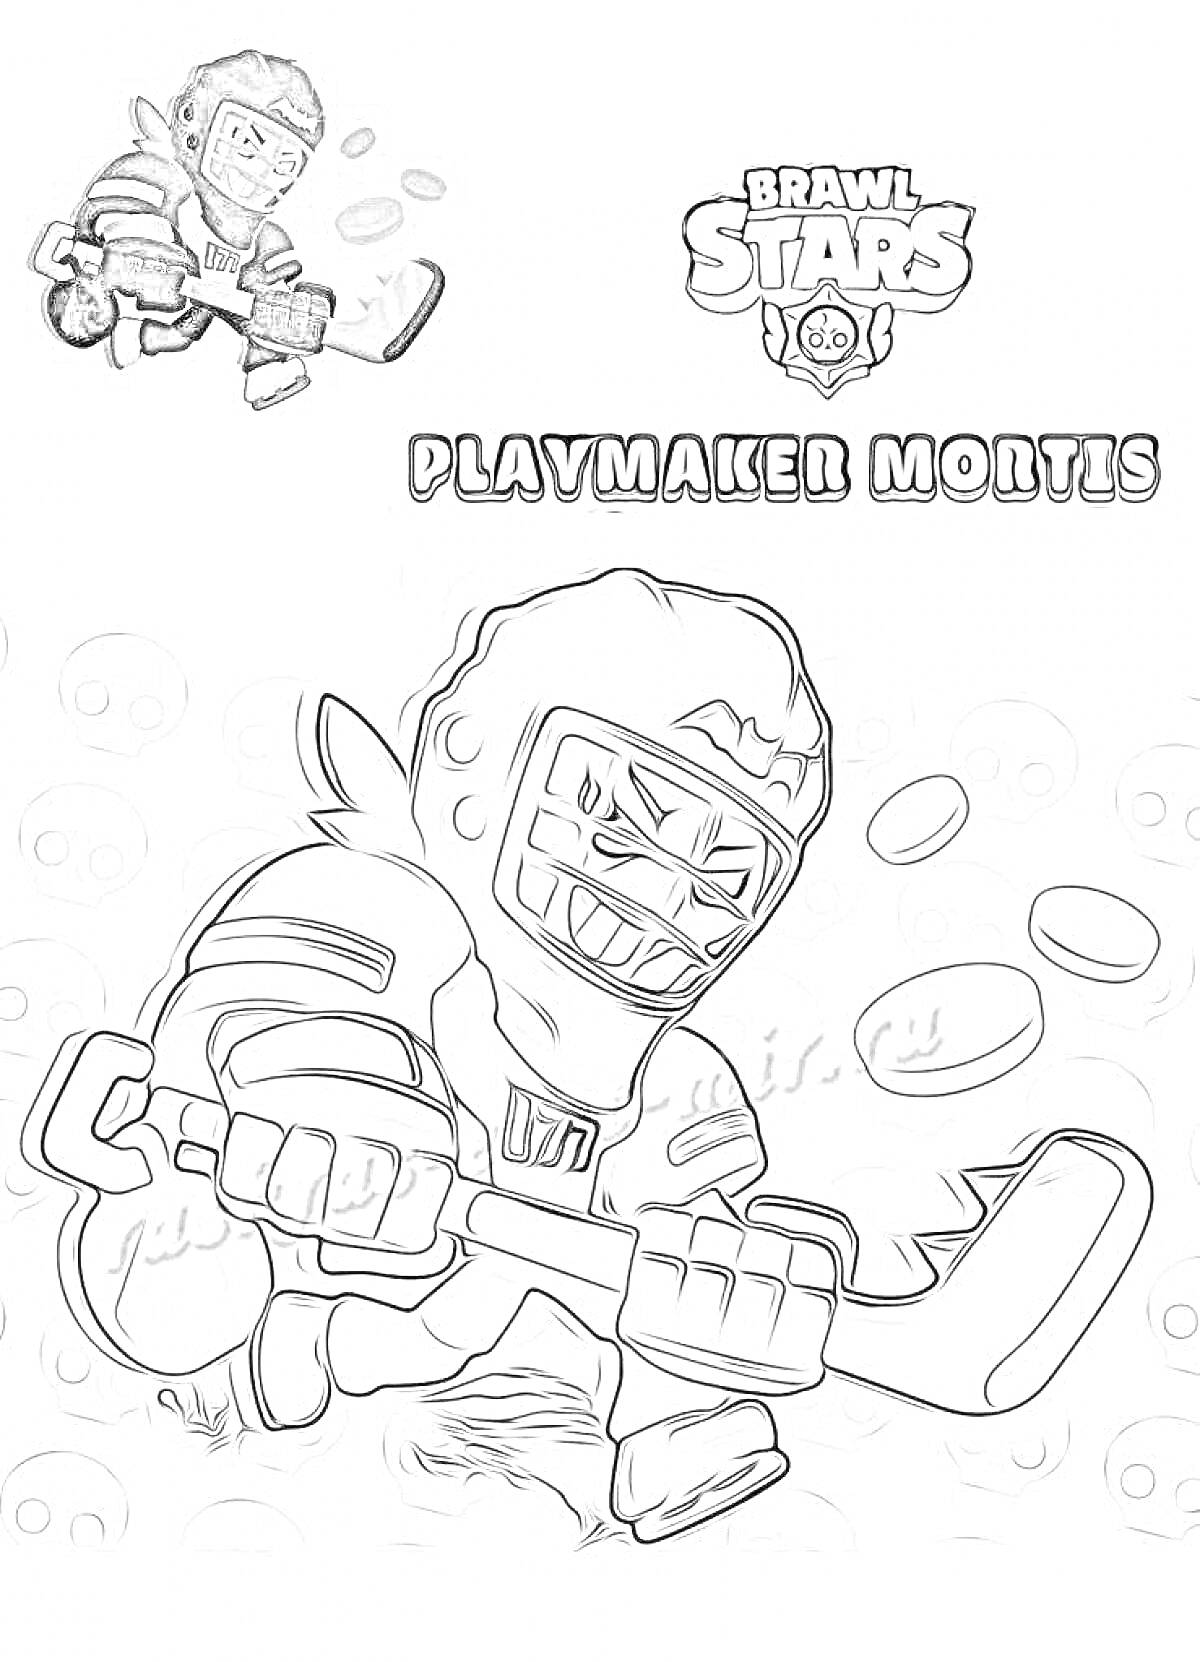 Раскраска Playmaker Mortis с хоккейной клюшкой, шайбами и логотипом Brawl Stars